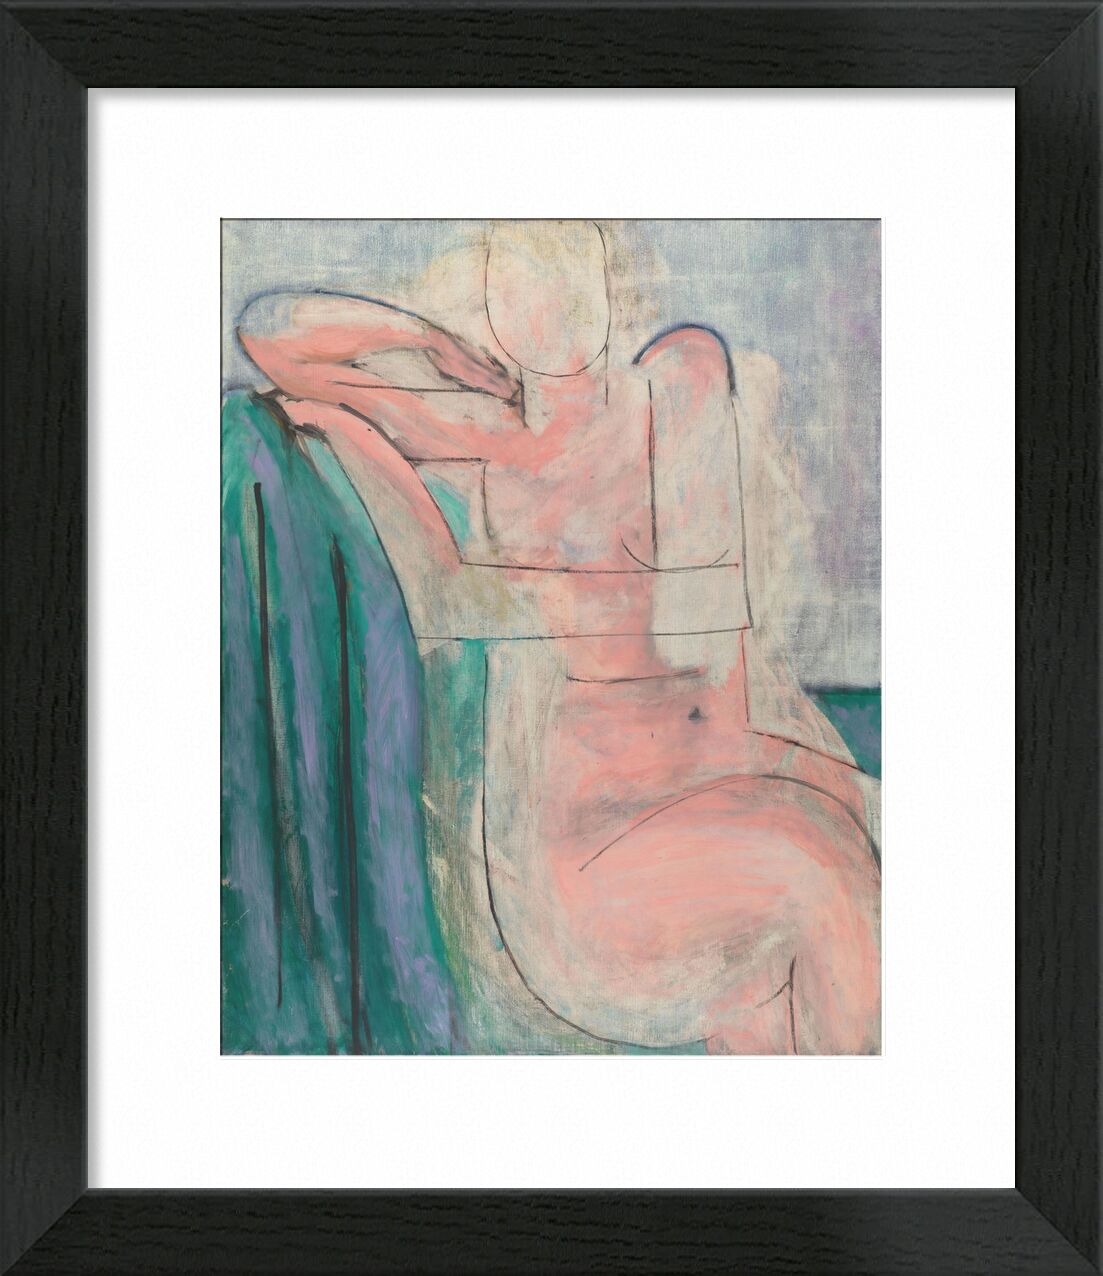 Sitzender rosafarbener Akt - Matisse von Bildende Kunst, Prodi Art, Henri Matisse, Matisse, Rosa, Frau, nackt